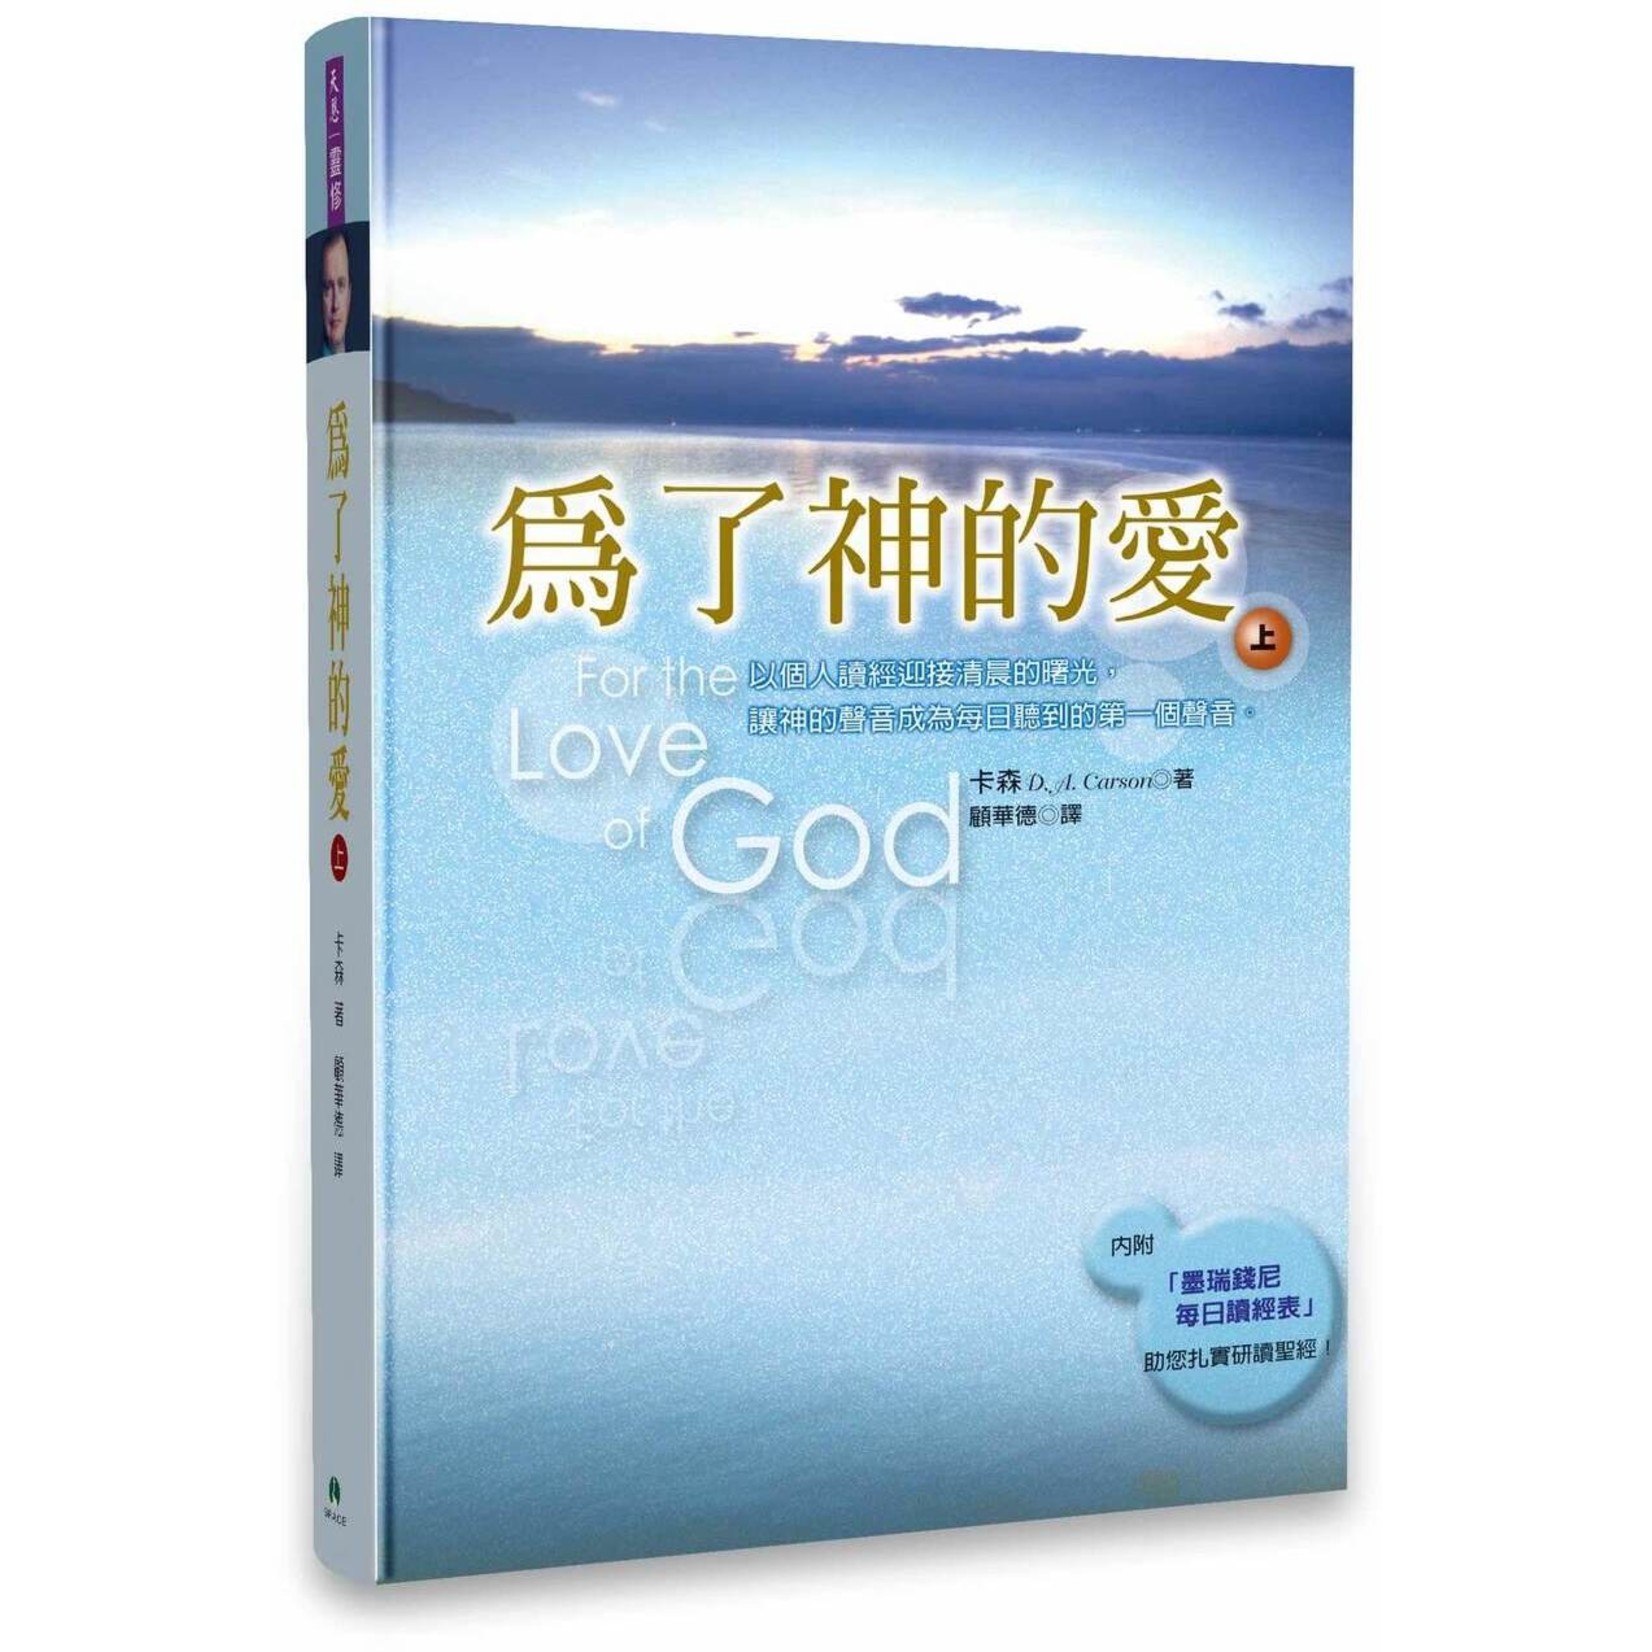 天恩 Grace Publishing House 為了神的愛（上） For the Love of God, Volume One